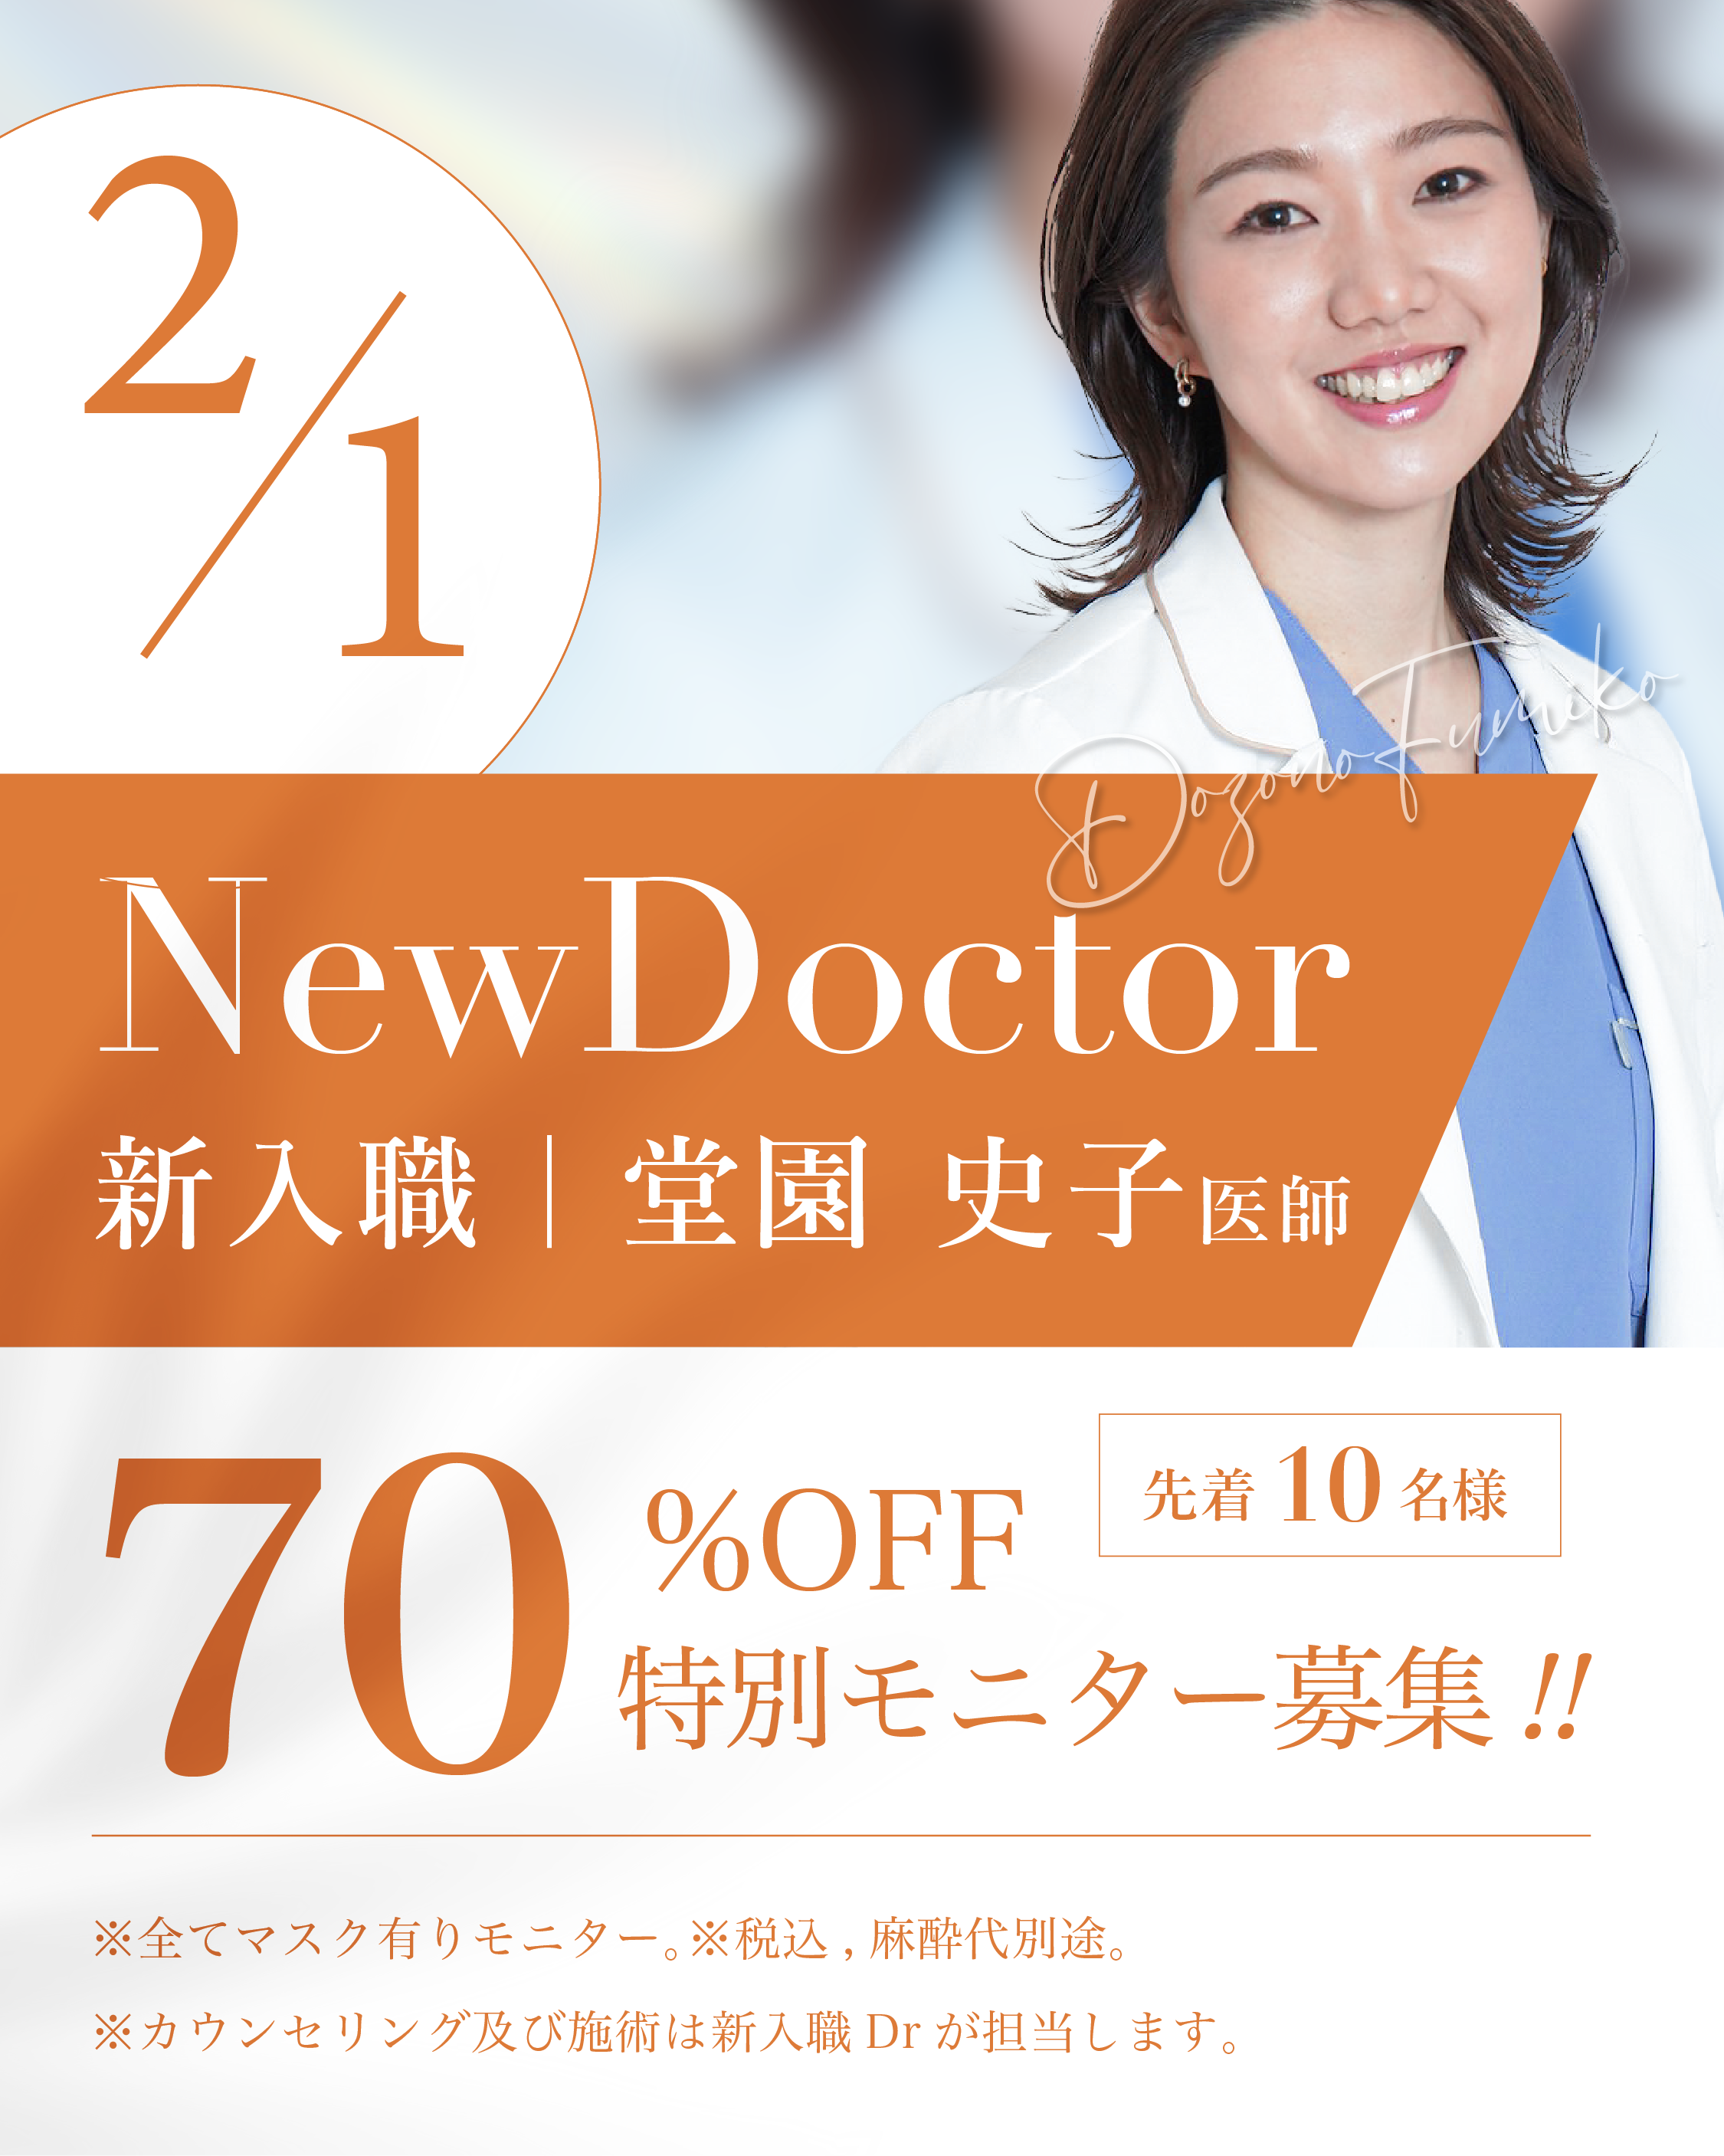 【新入職Dr.】 <br>70%OFFキャンペーン| 堂園史子医師